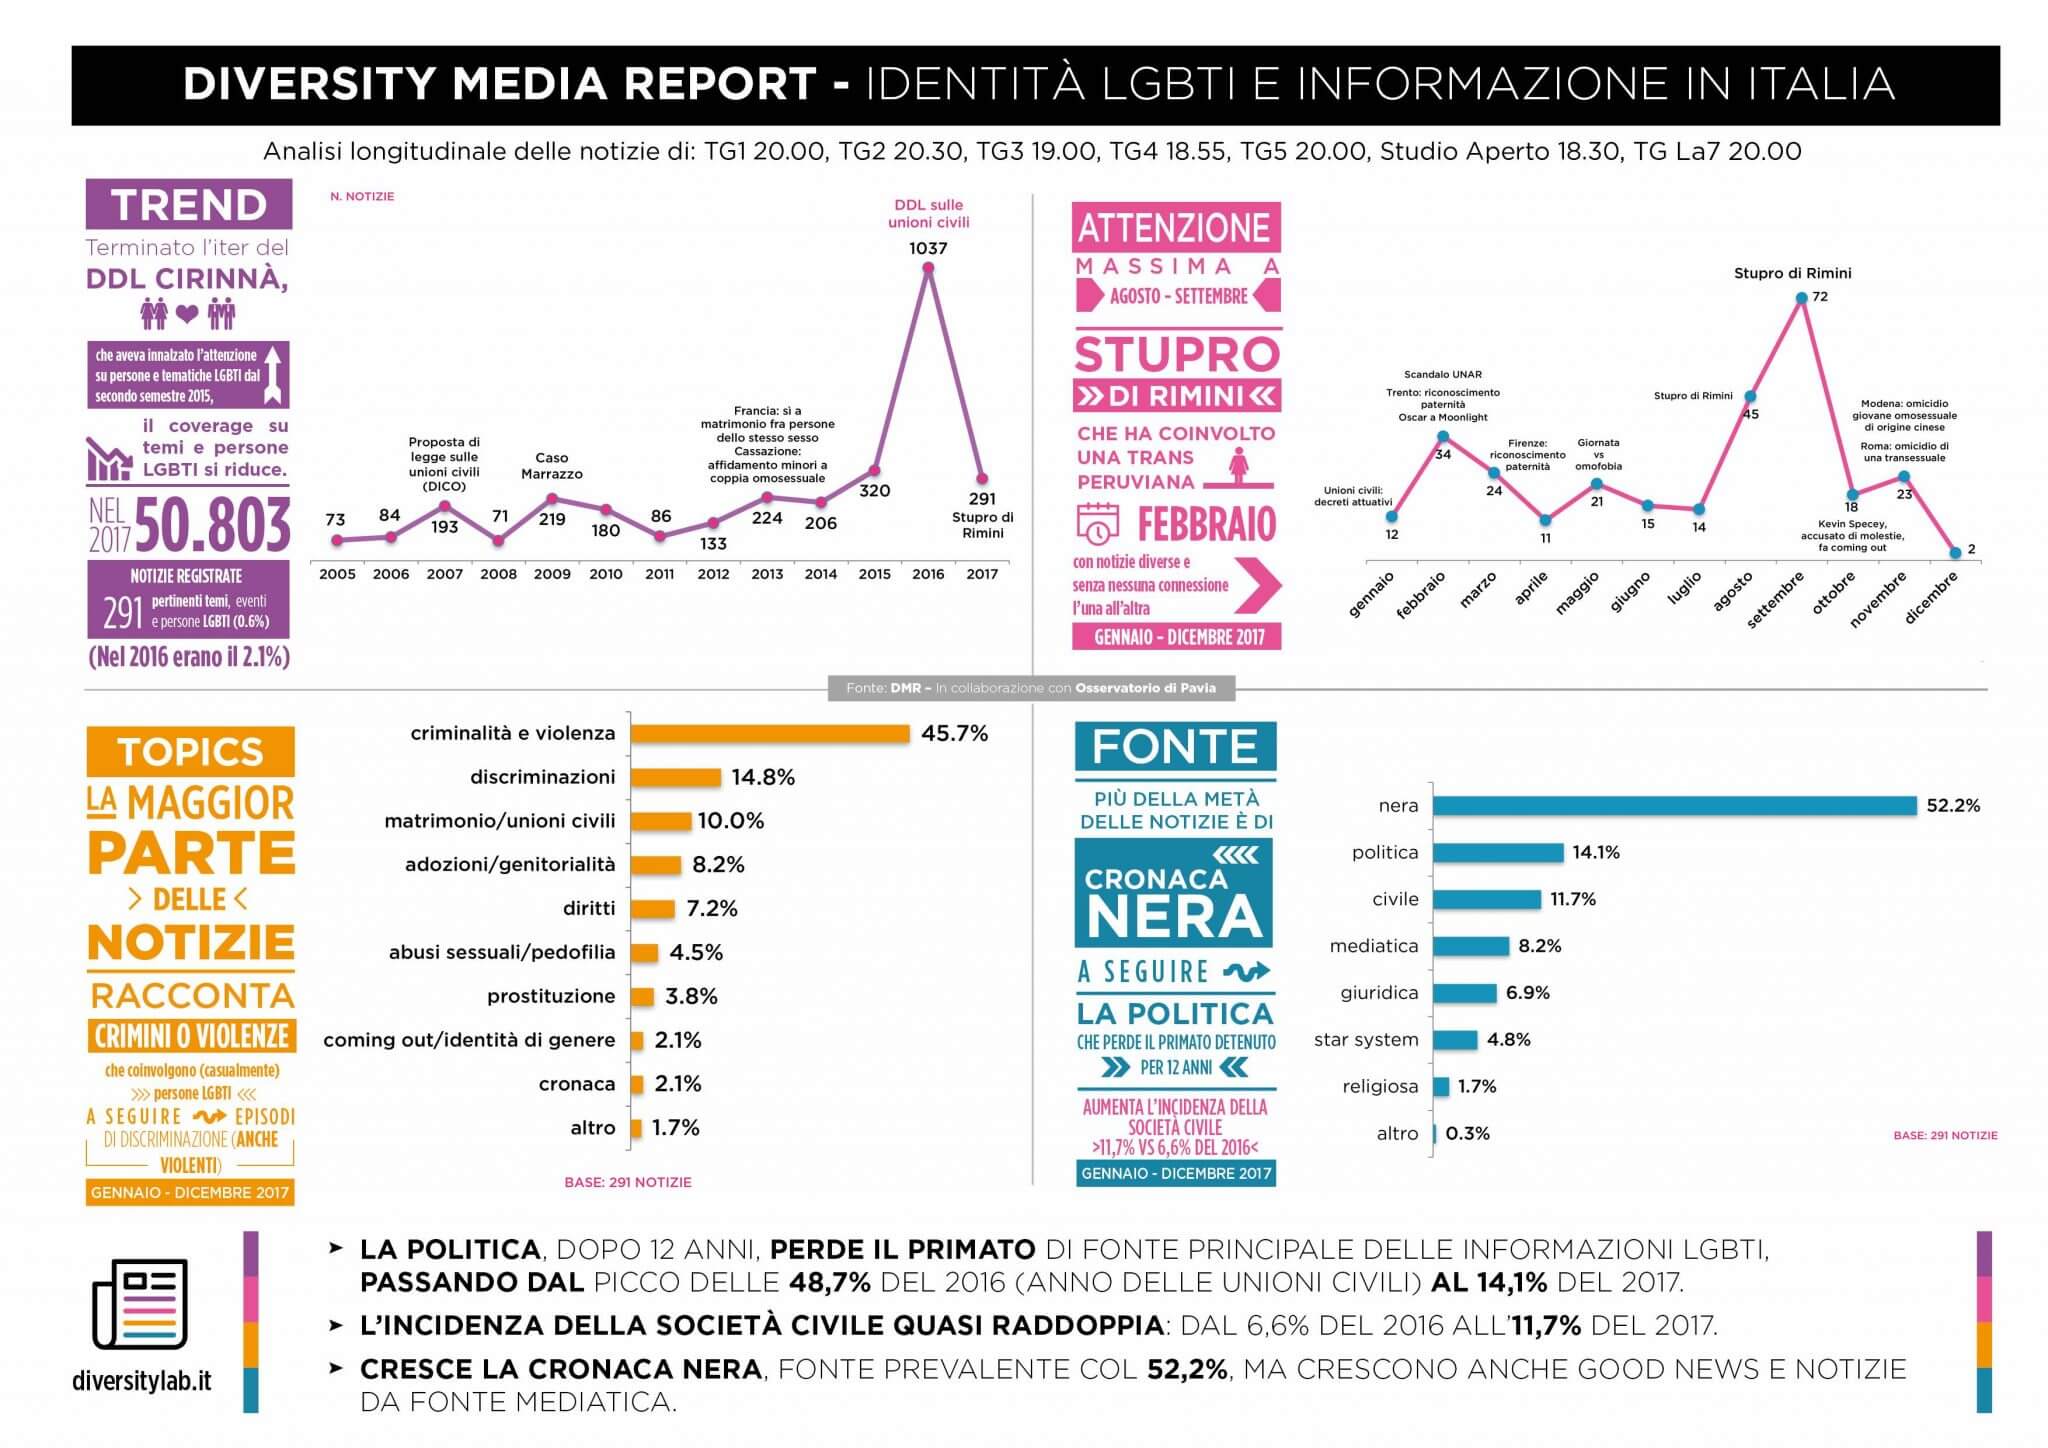 Diversity Media Awards 2018, le nomination e il report sulla rappresentazione LGBTI nei media italiani - 4 DMR infografica info 20181 - Gay.it